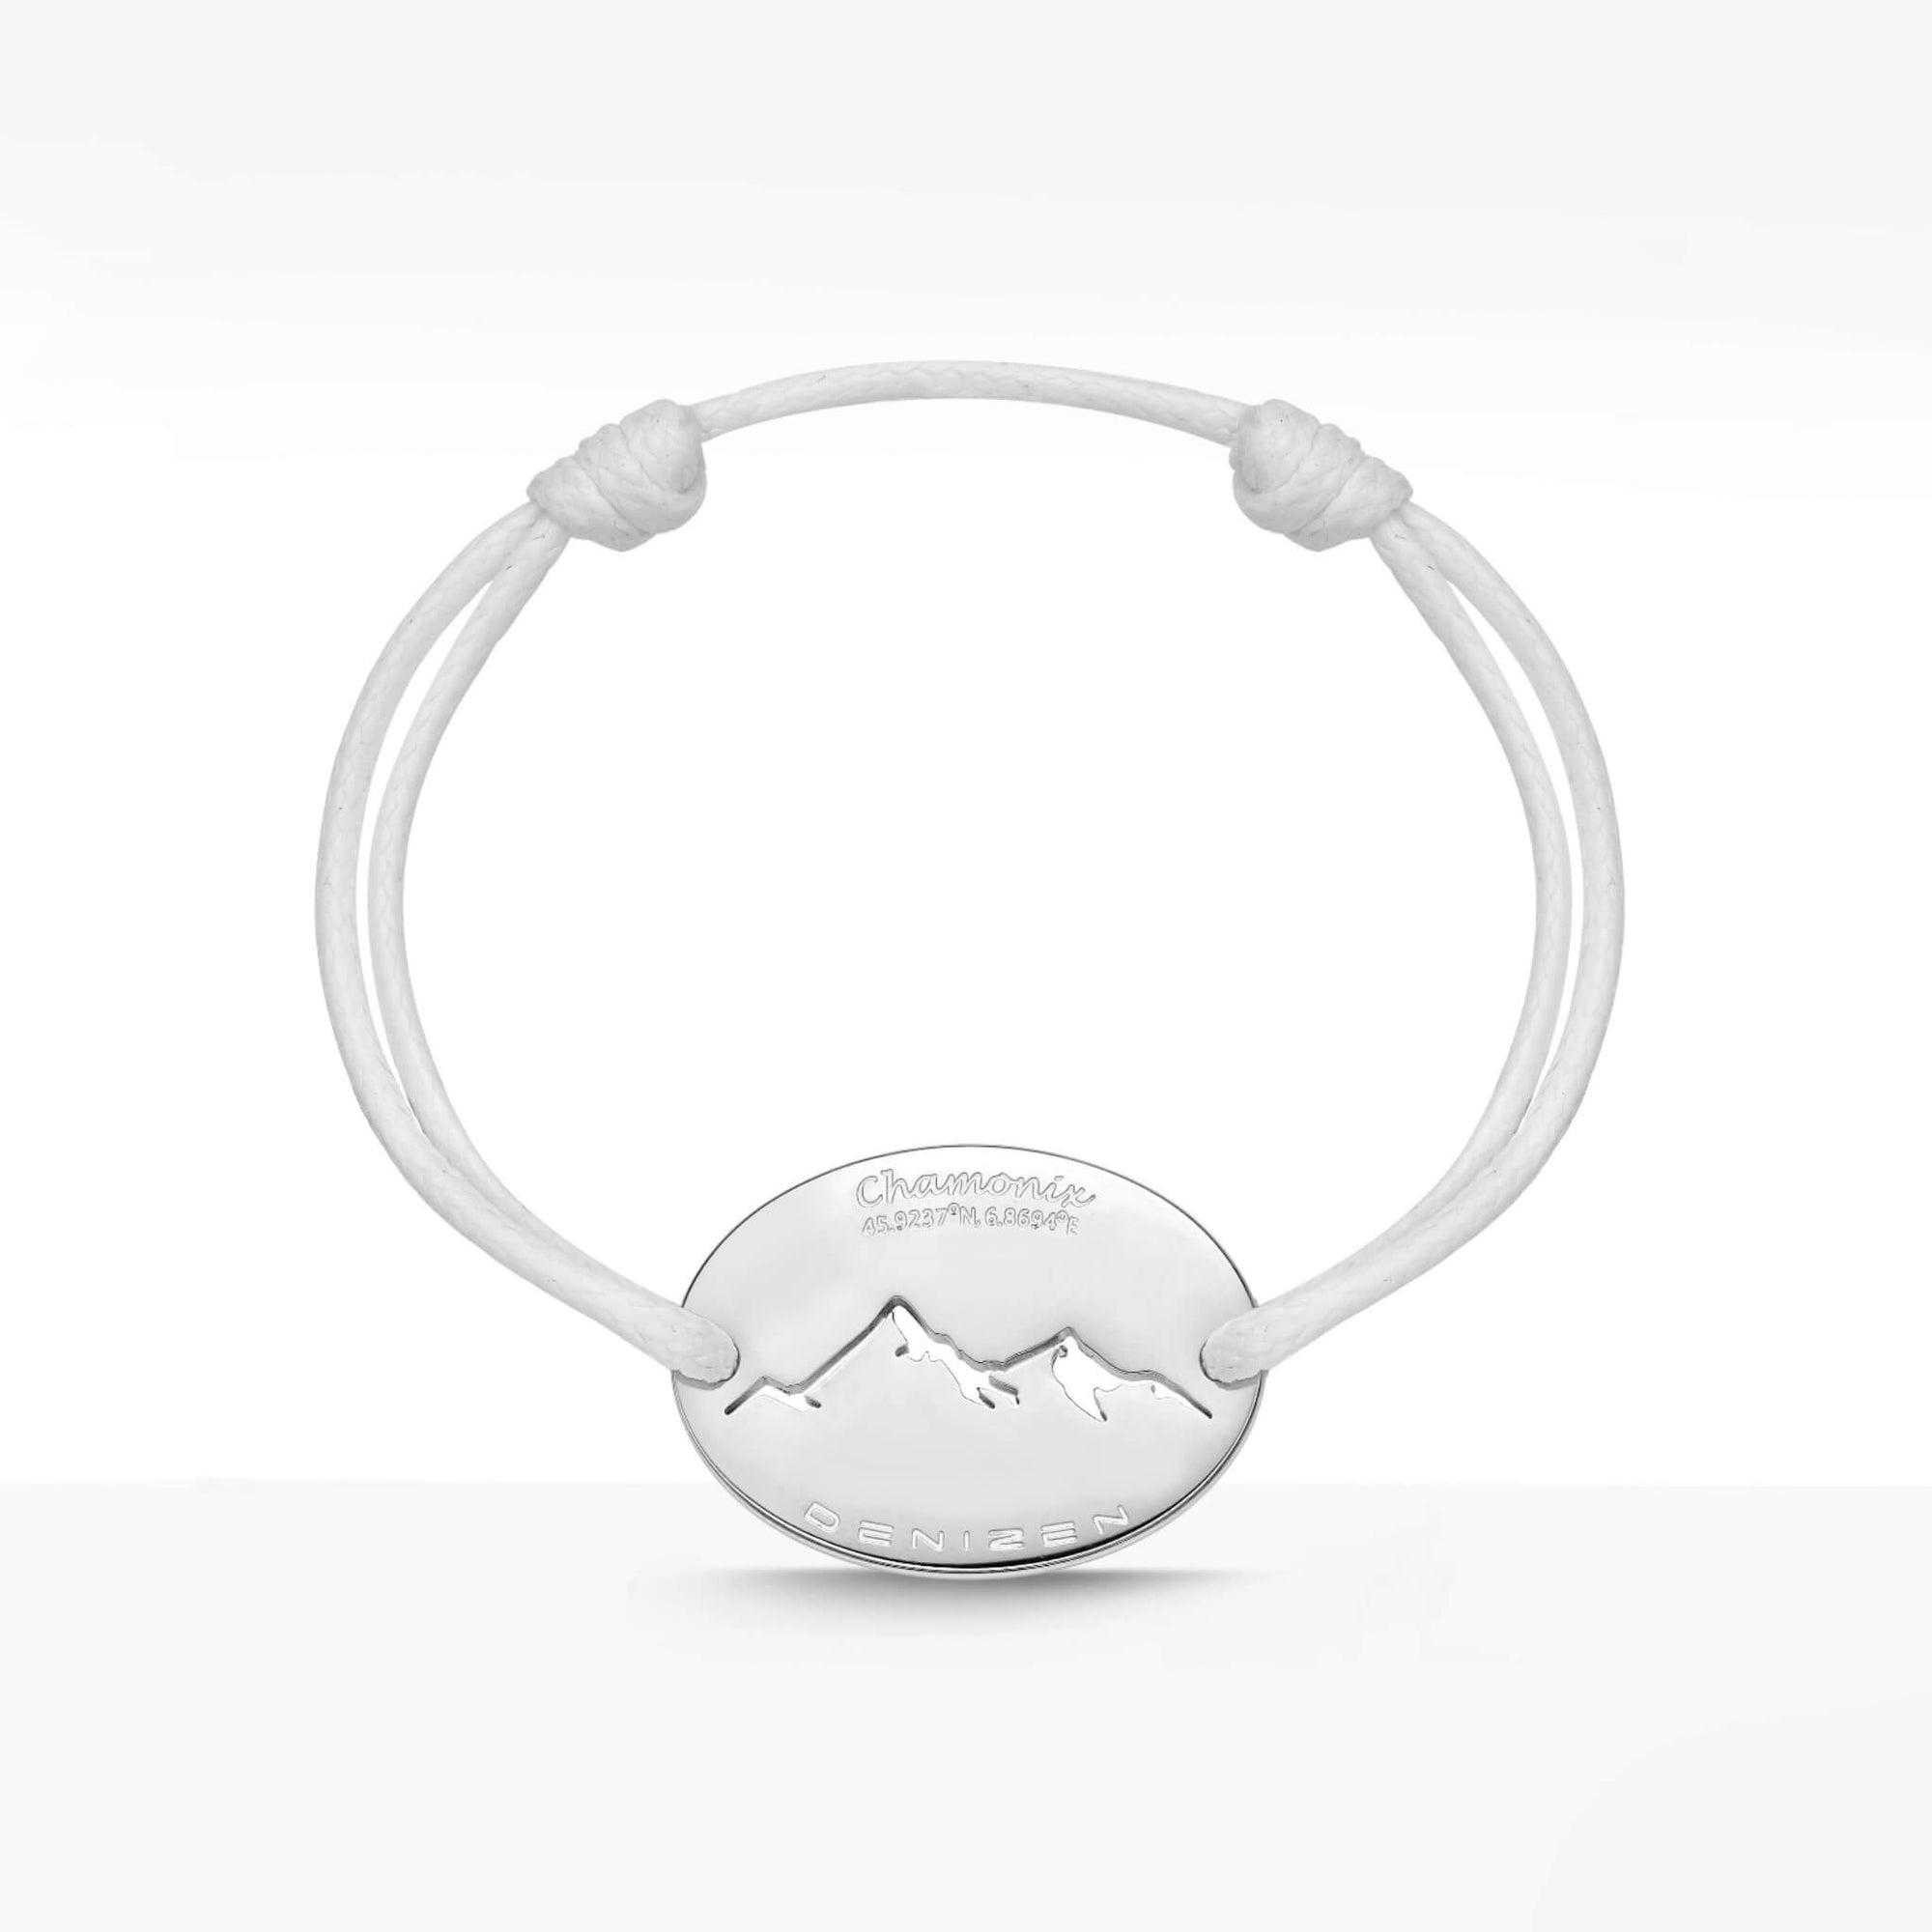 Montblanc Announces A Smart Bracelet For Your Fancy Watch | TechCrunch